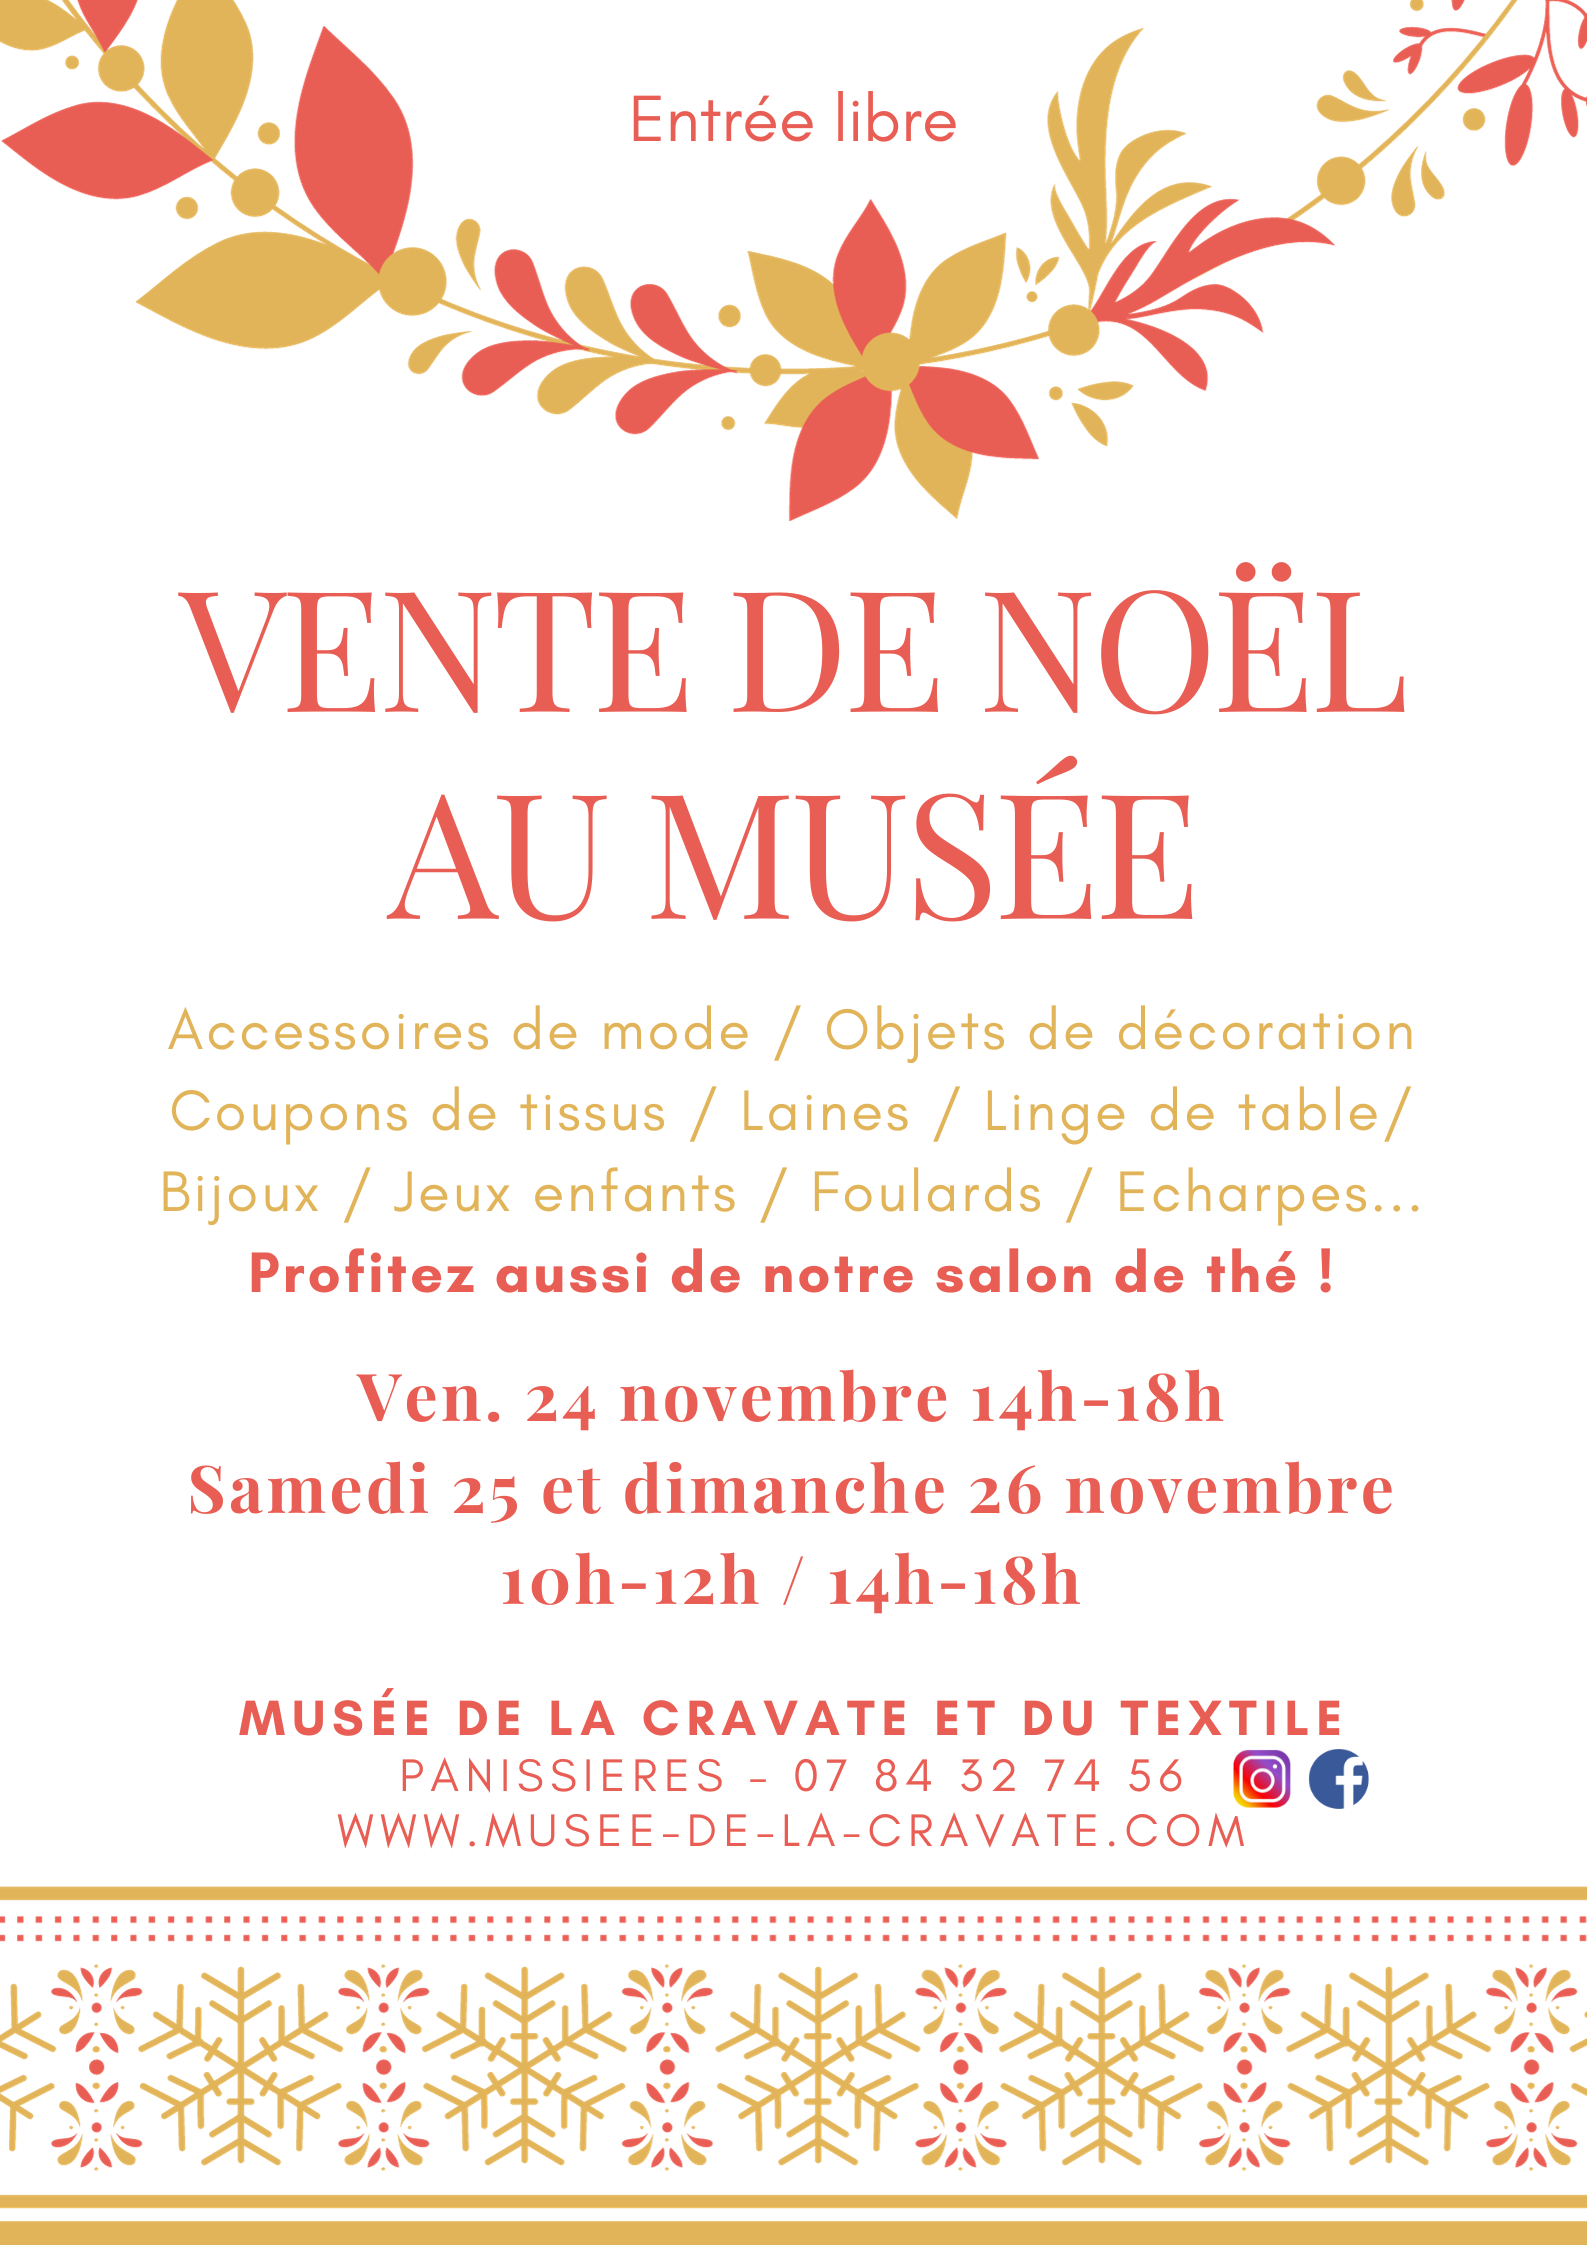 You are currently viewing Vente de Noël du Musée de la cravate et du textile